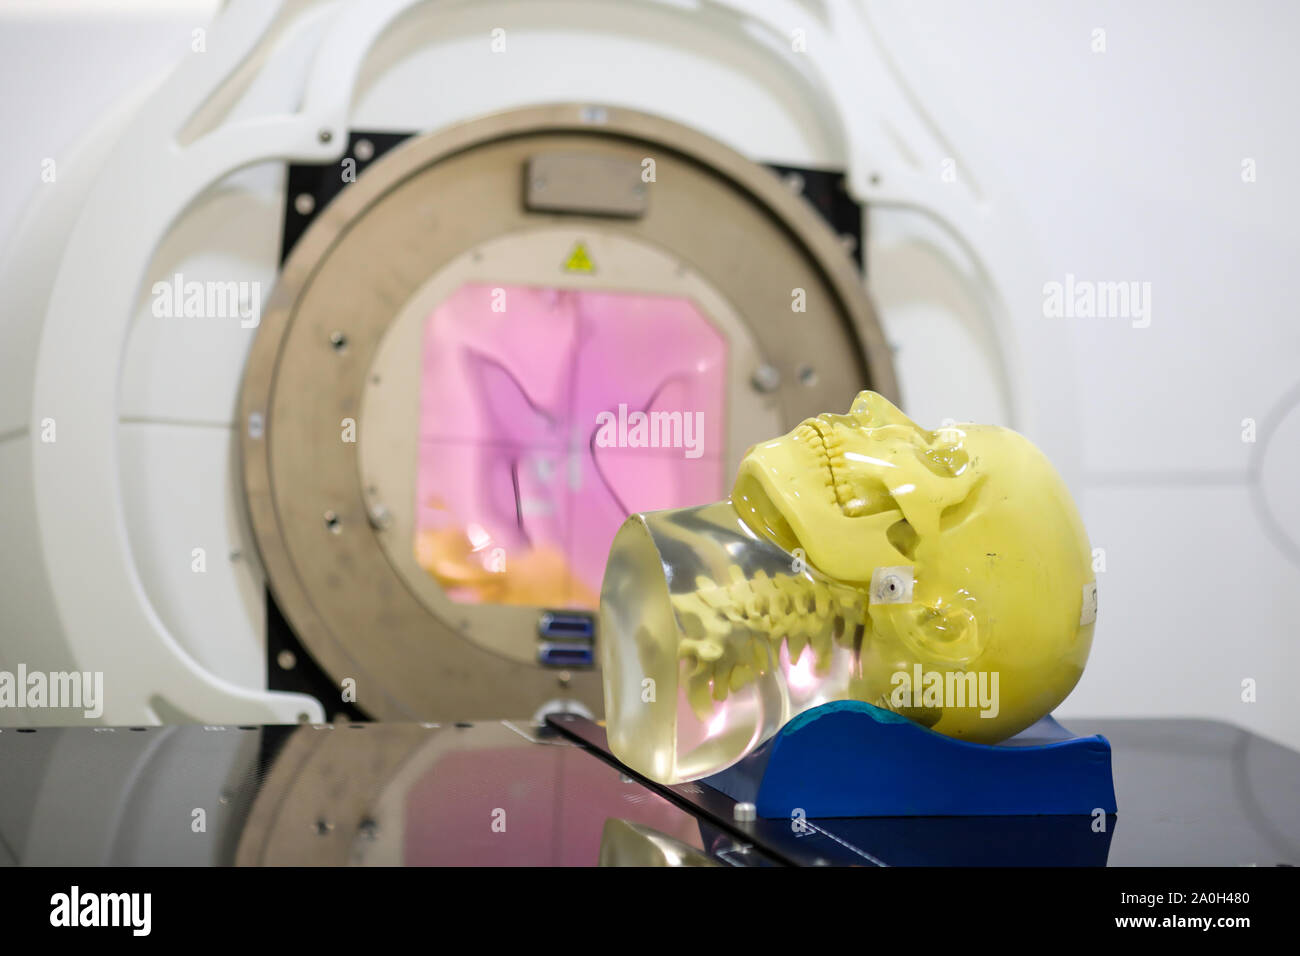 Le tissu humain mimant la tête de mannequin sur un accélérateur linéaire (linac) utilisé pour la radiothérapie pour les patients atteints de cancer Banque D'Images